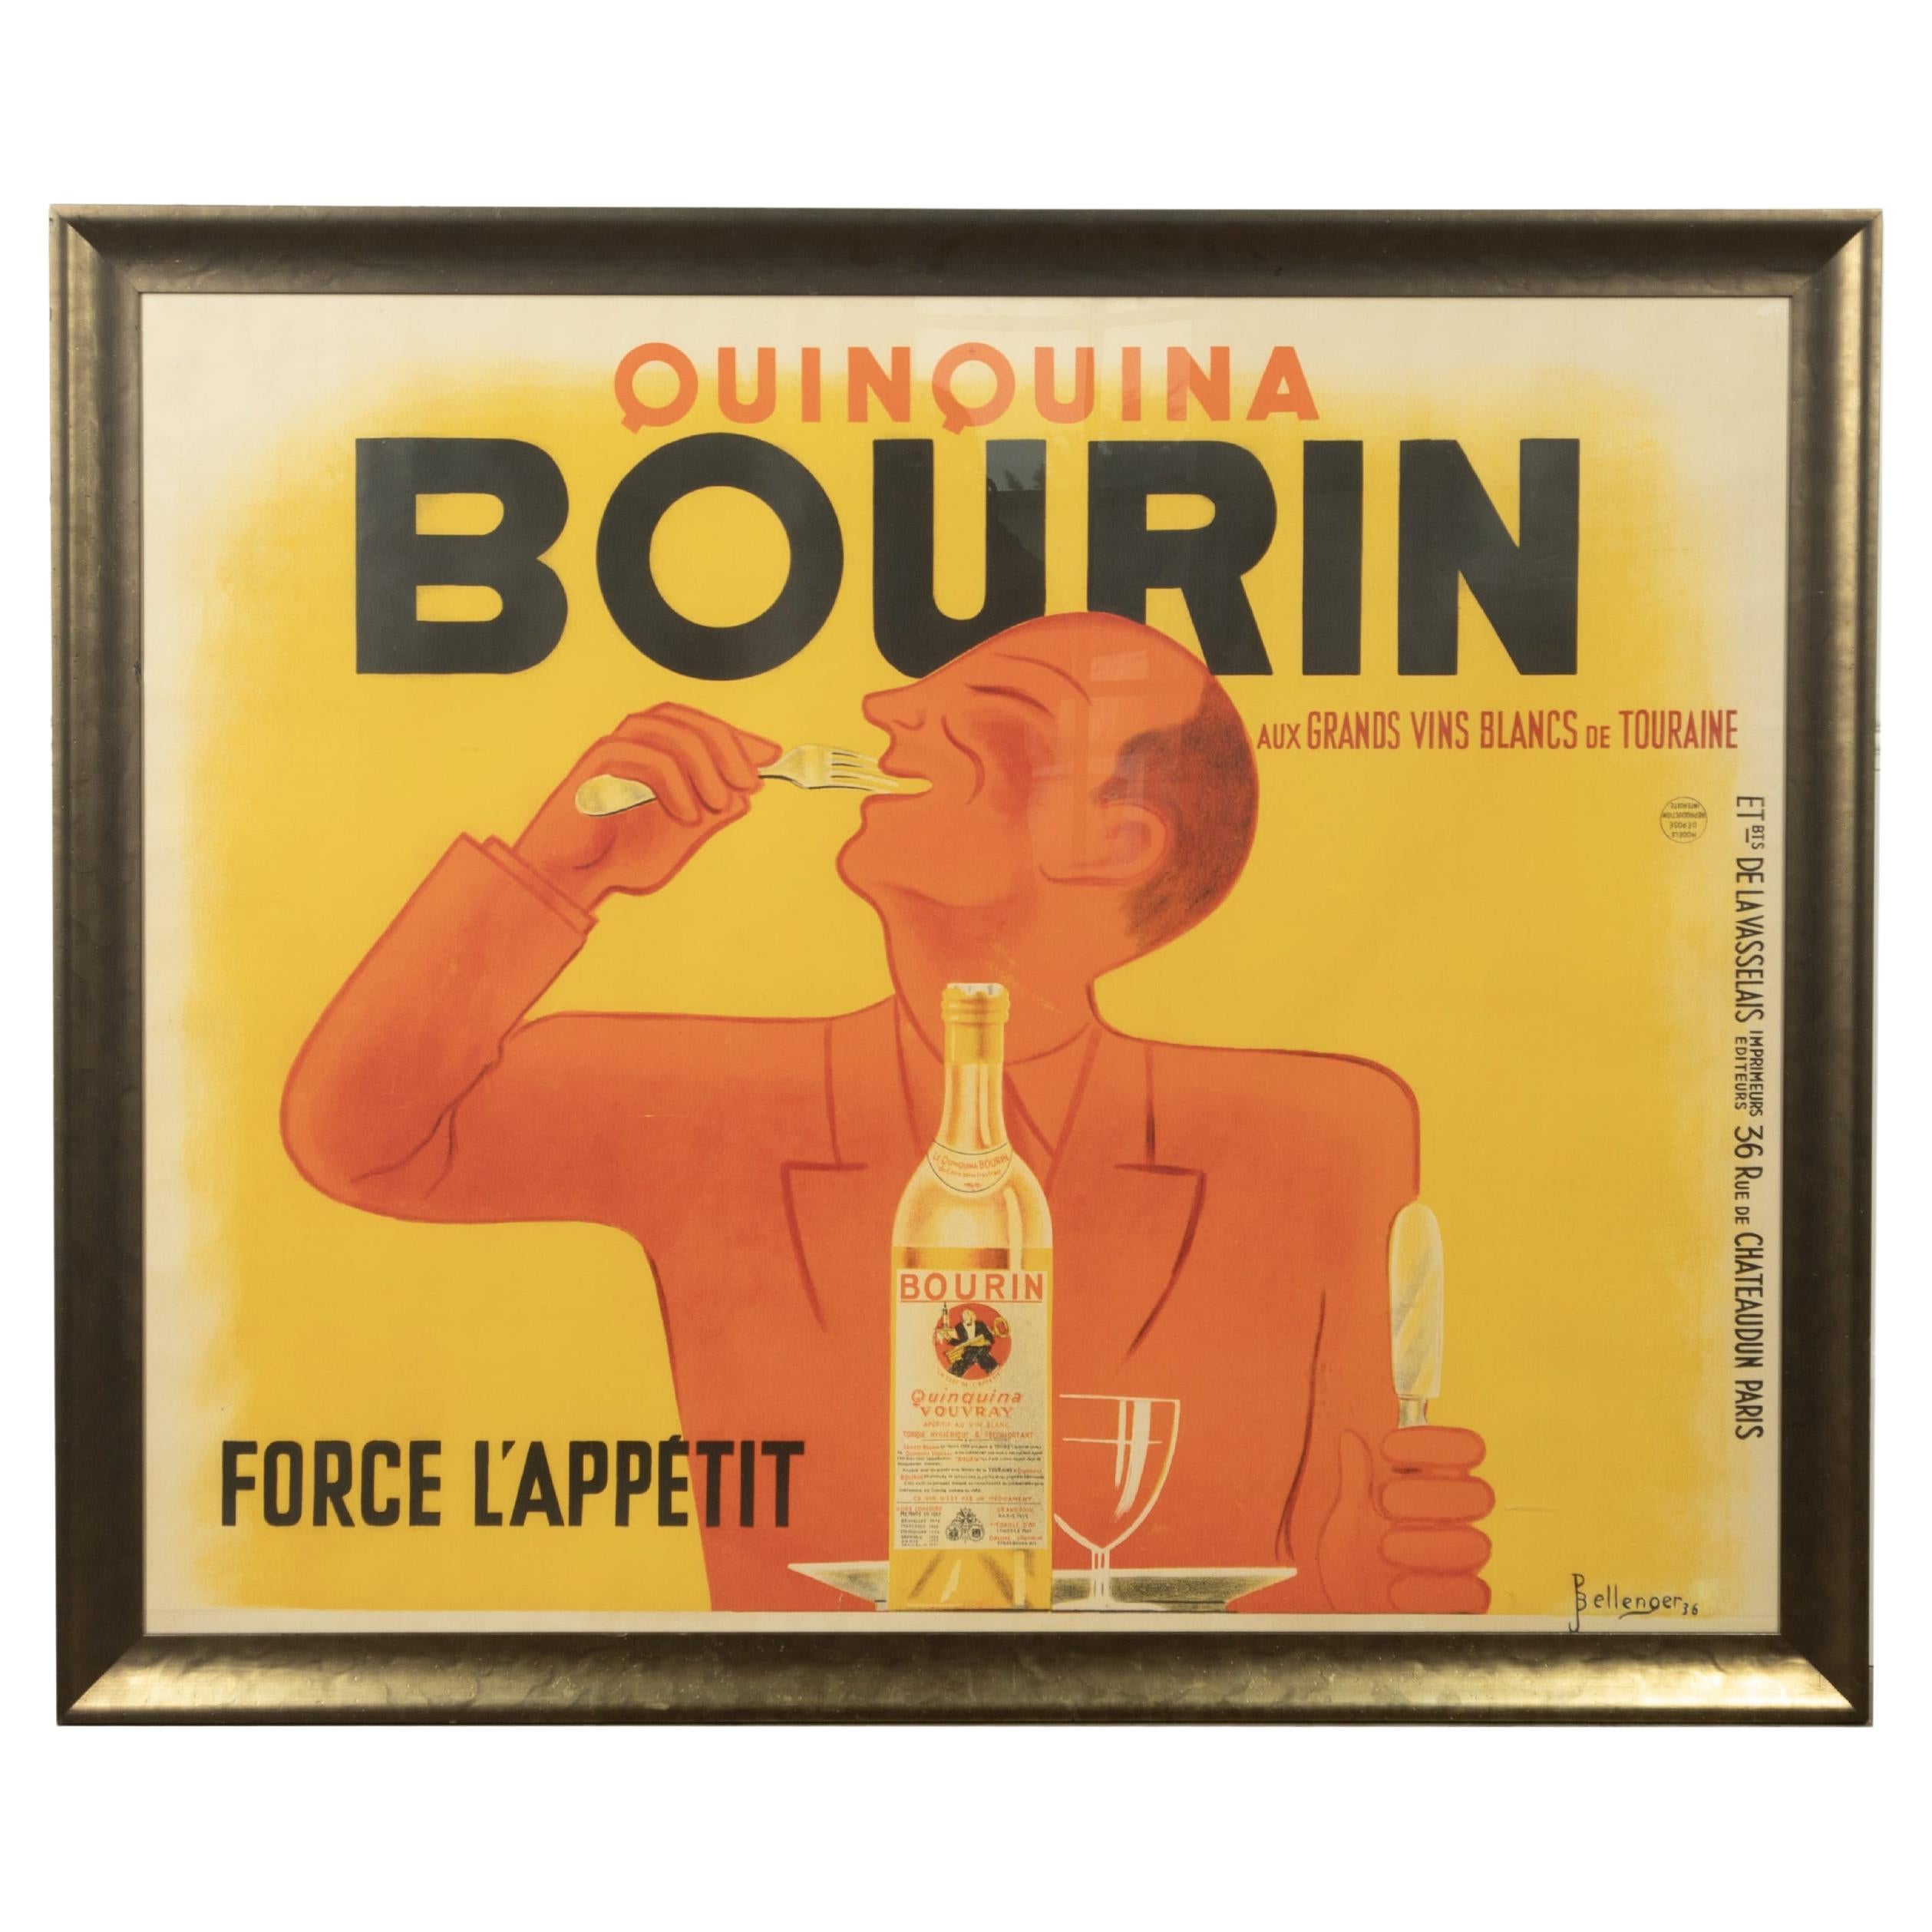 Französisches Bourin-Poster des 20. Jahrhunderts